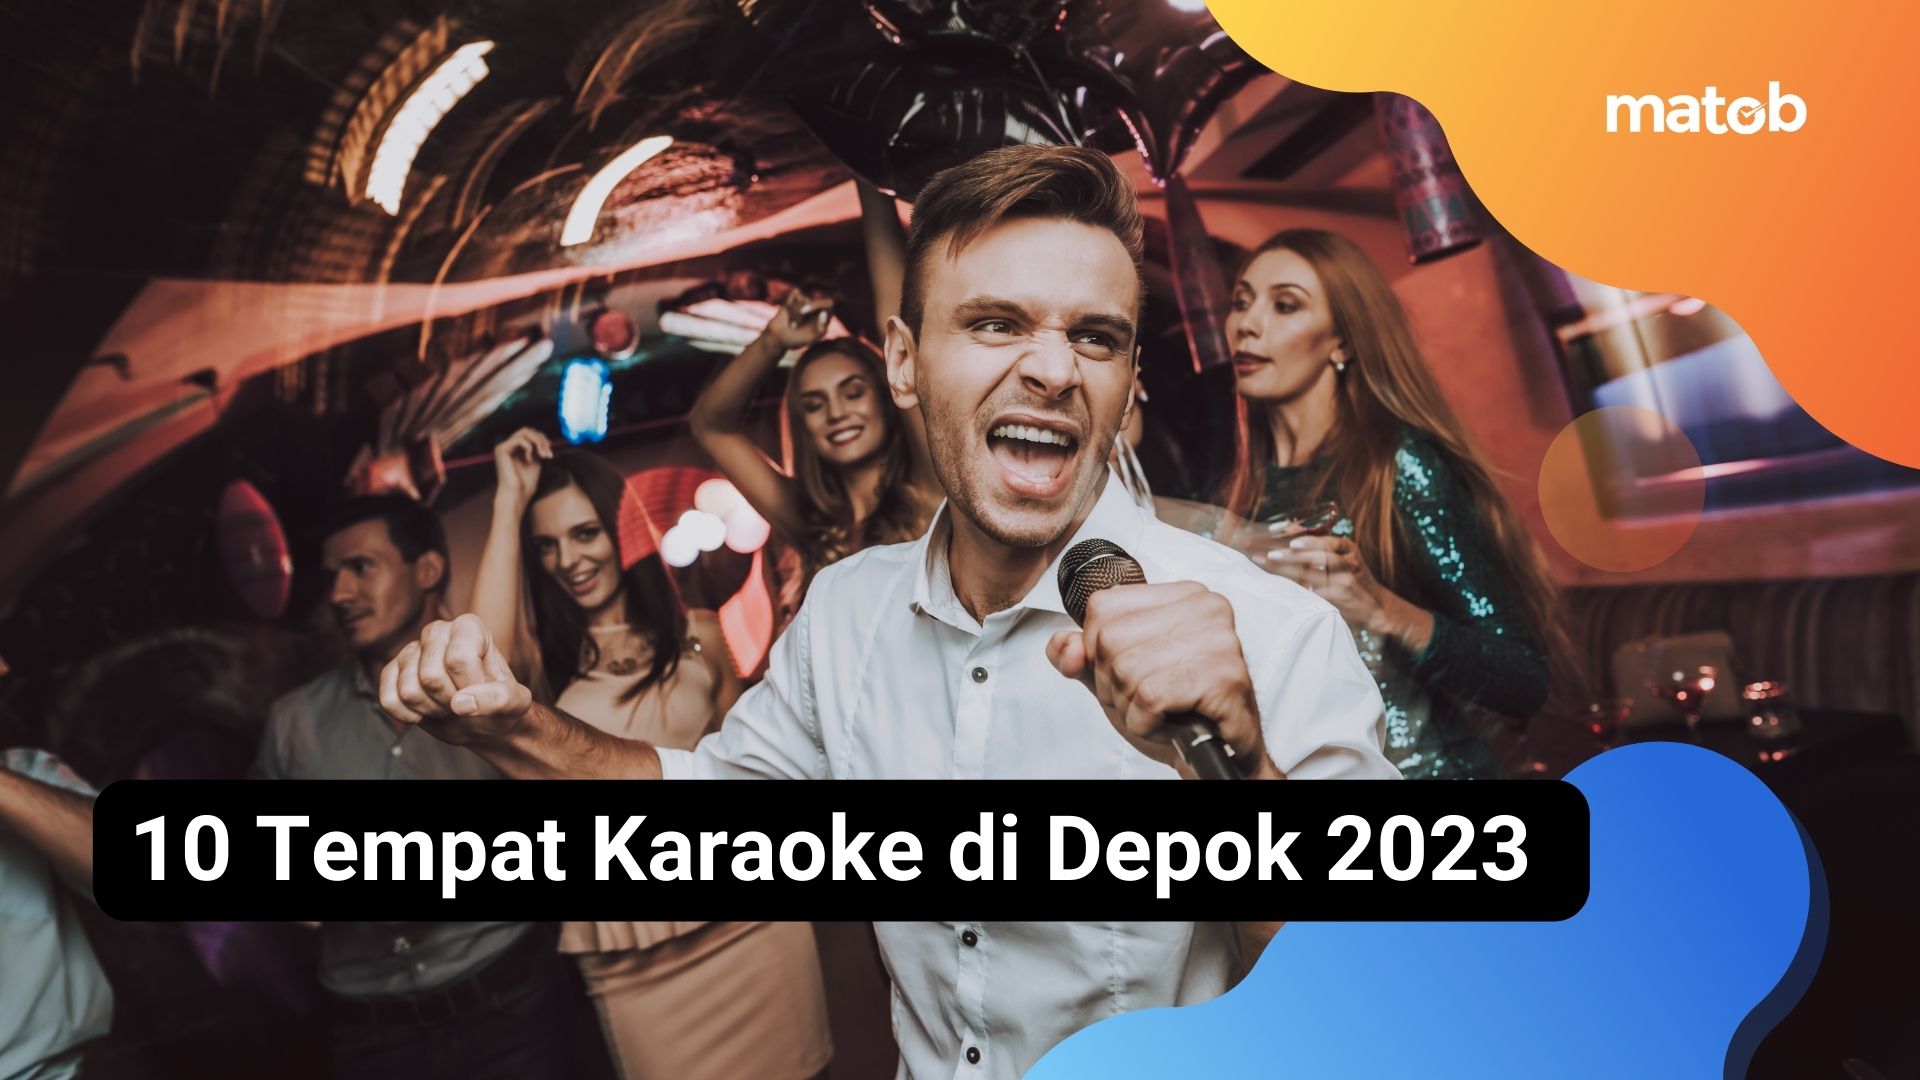 10 Tempat Karaoke di Depok 2023